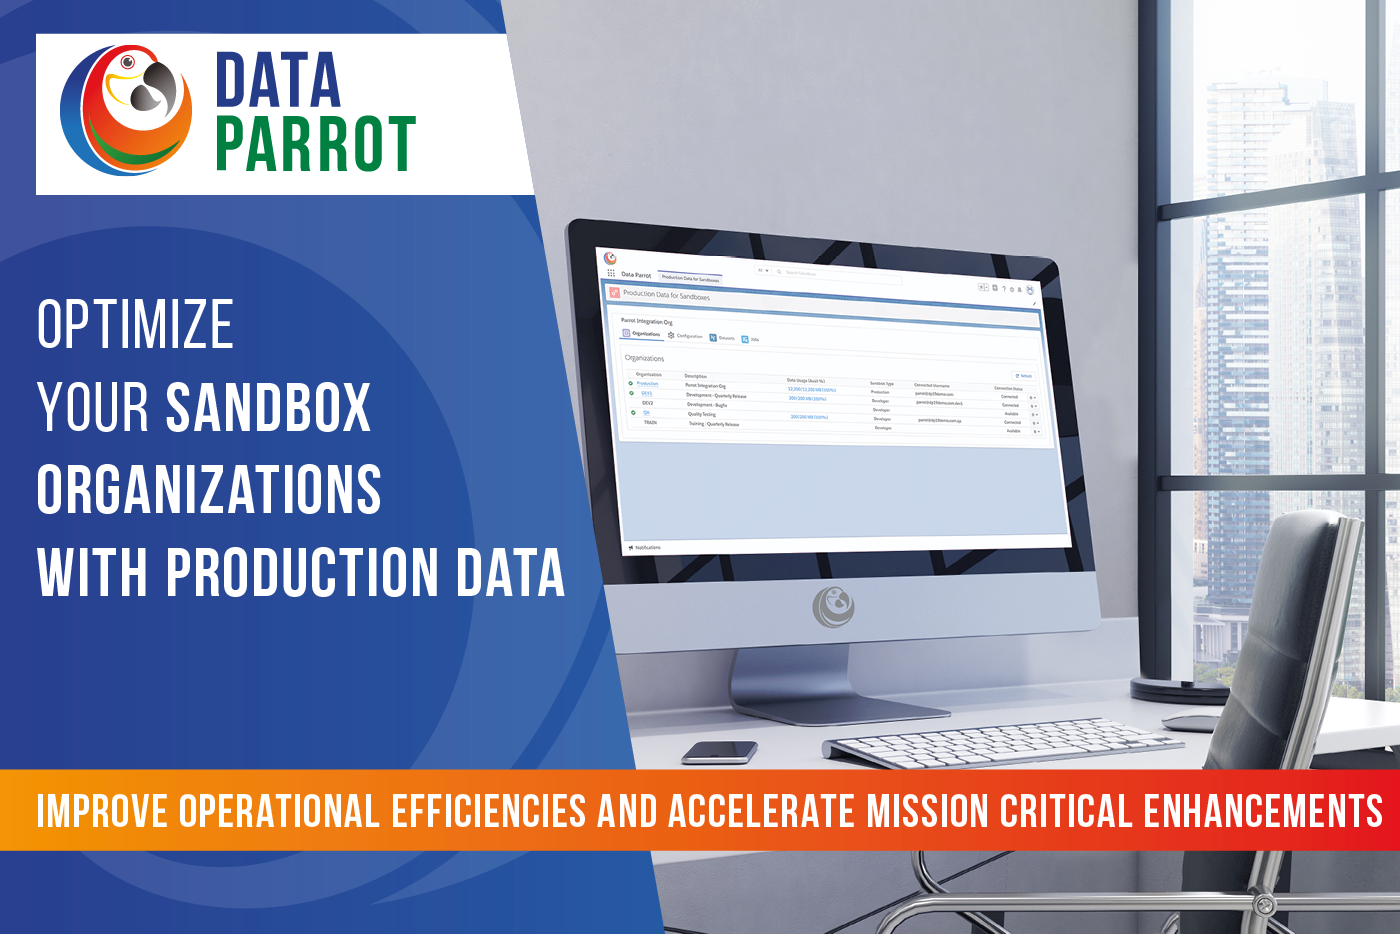 Data Parrot